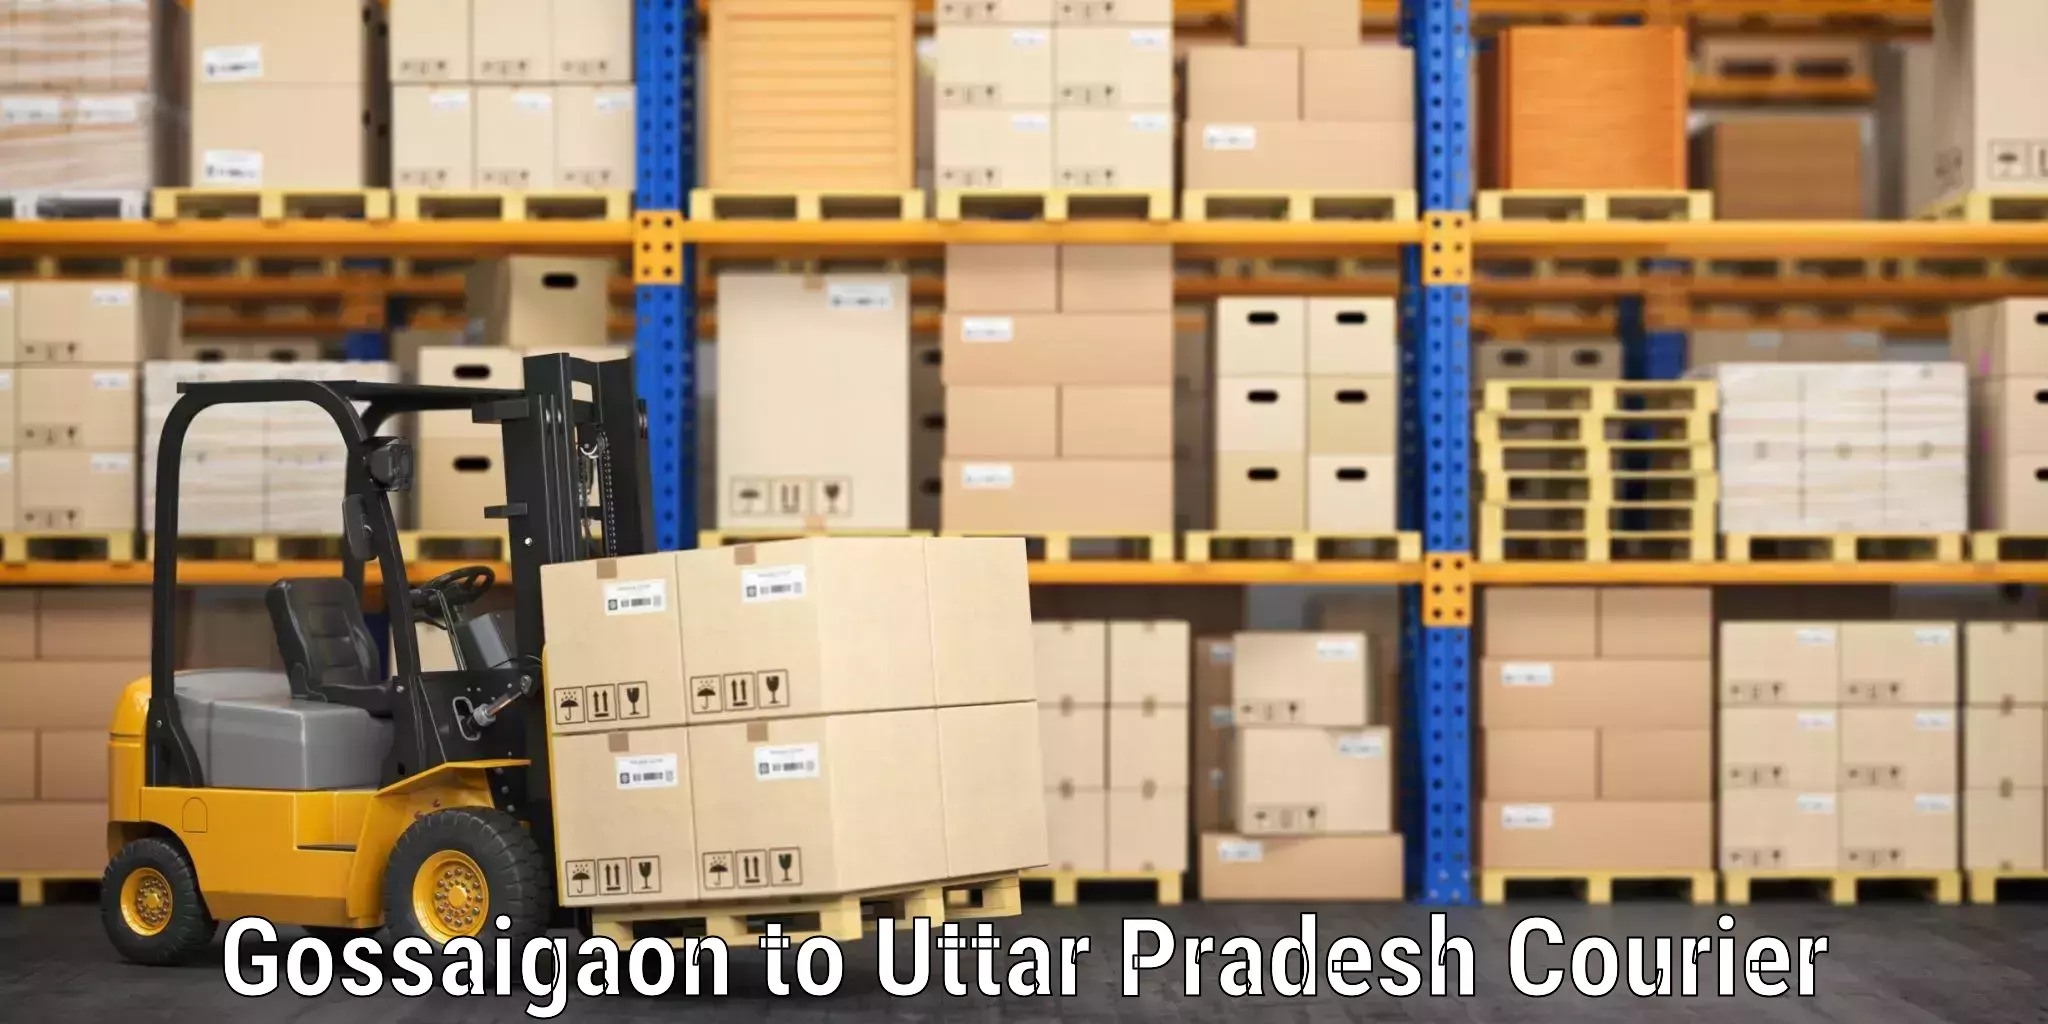 Luggage shipment tracking Gossaigaon to Ayodhya